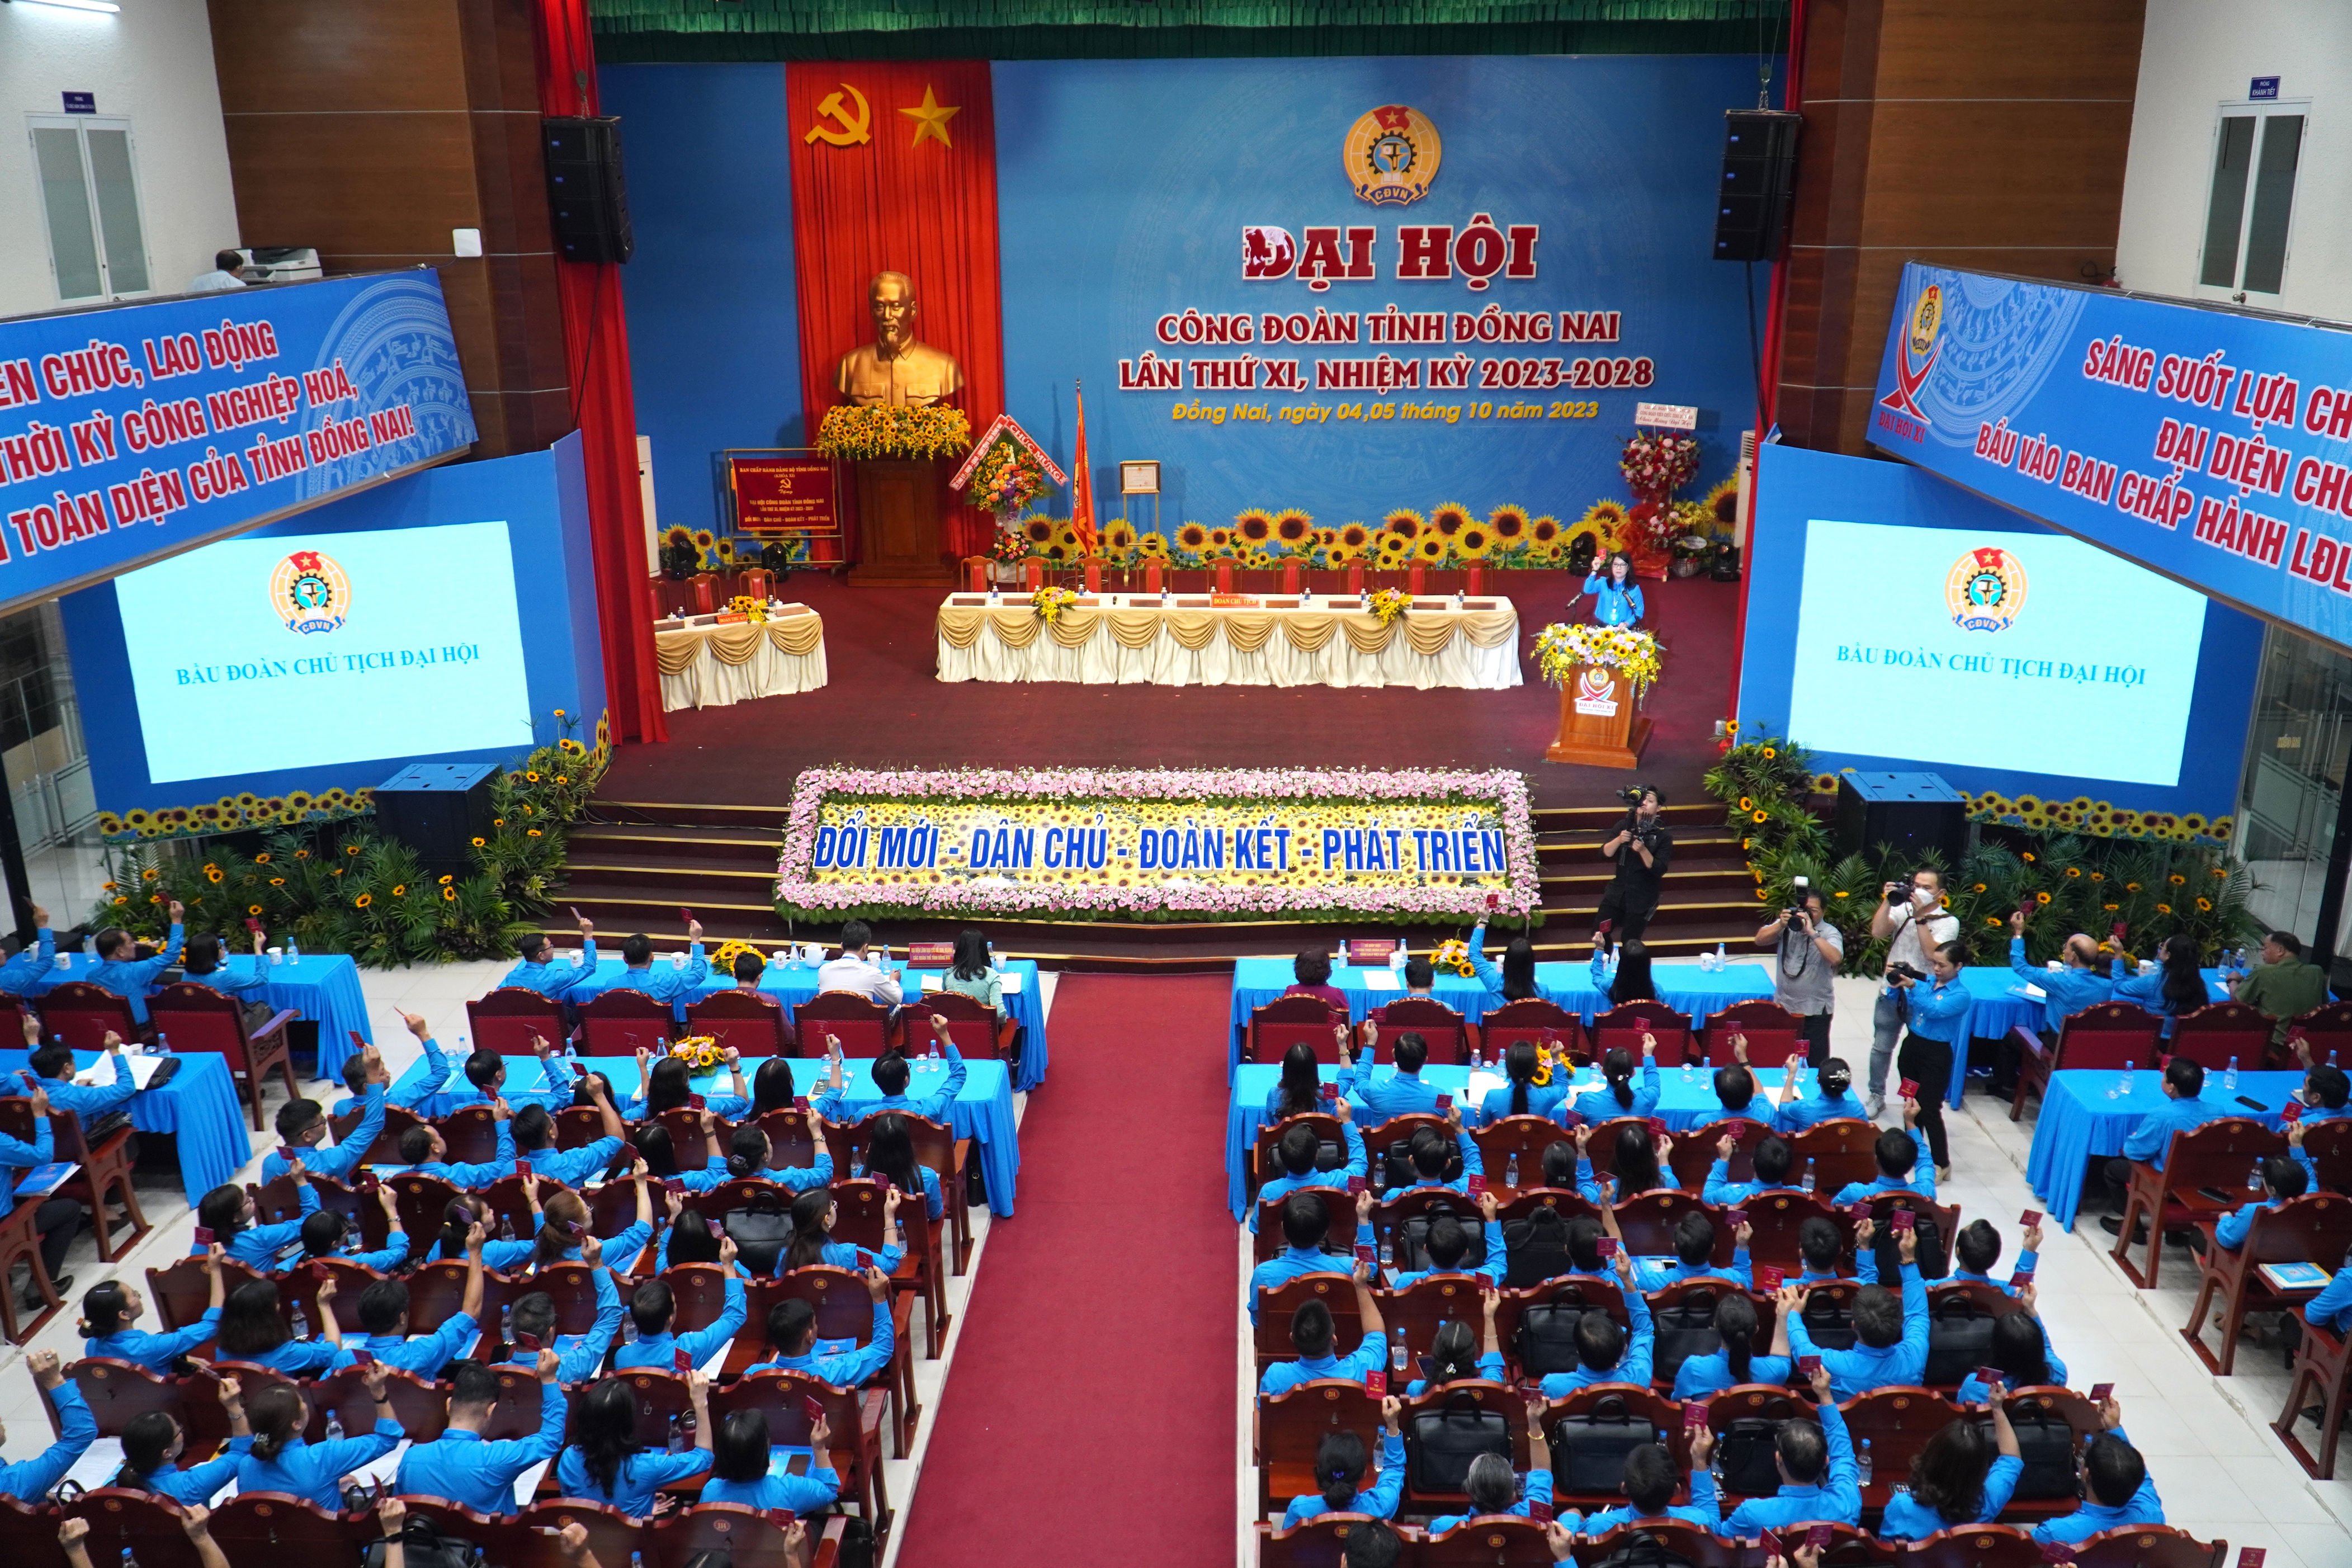 400 đại biểu đại diện 700.000 đoàn viên dự Đại hội Công đoàn tỉnh Đồng Nai